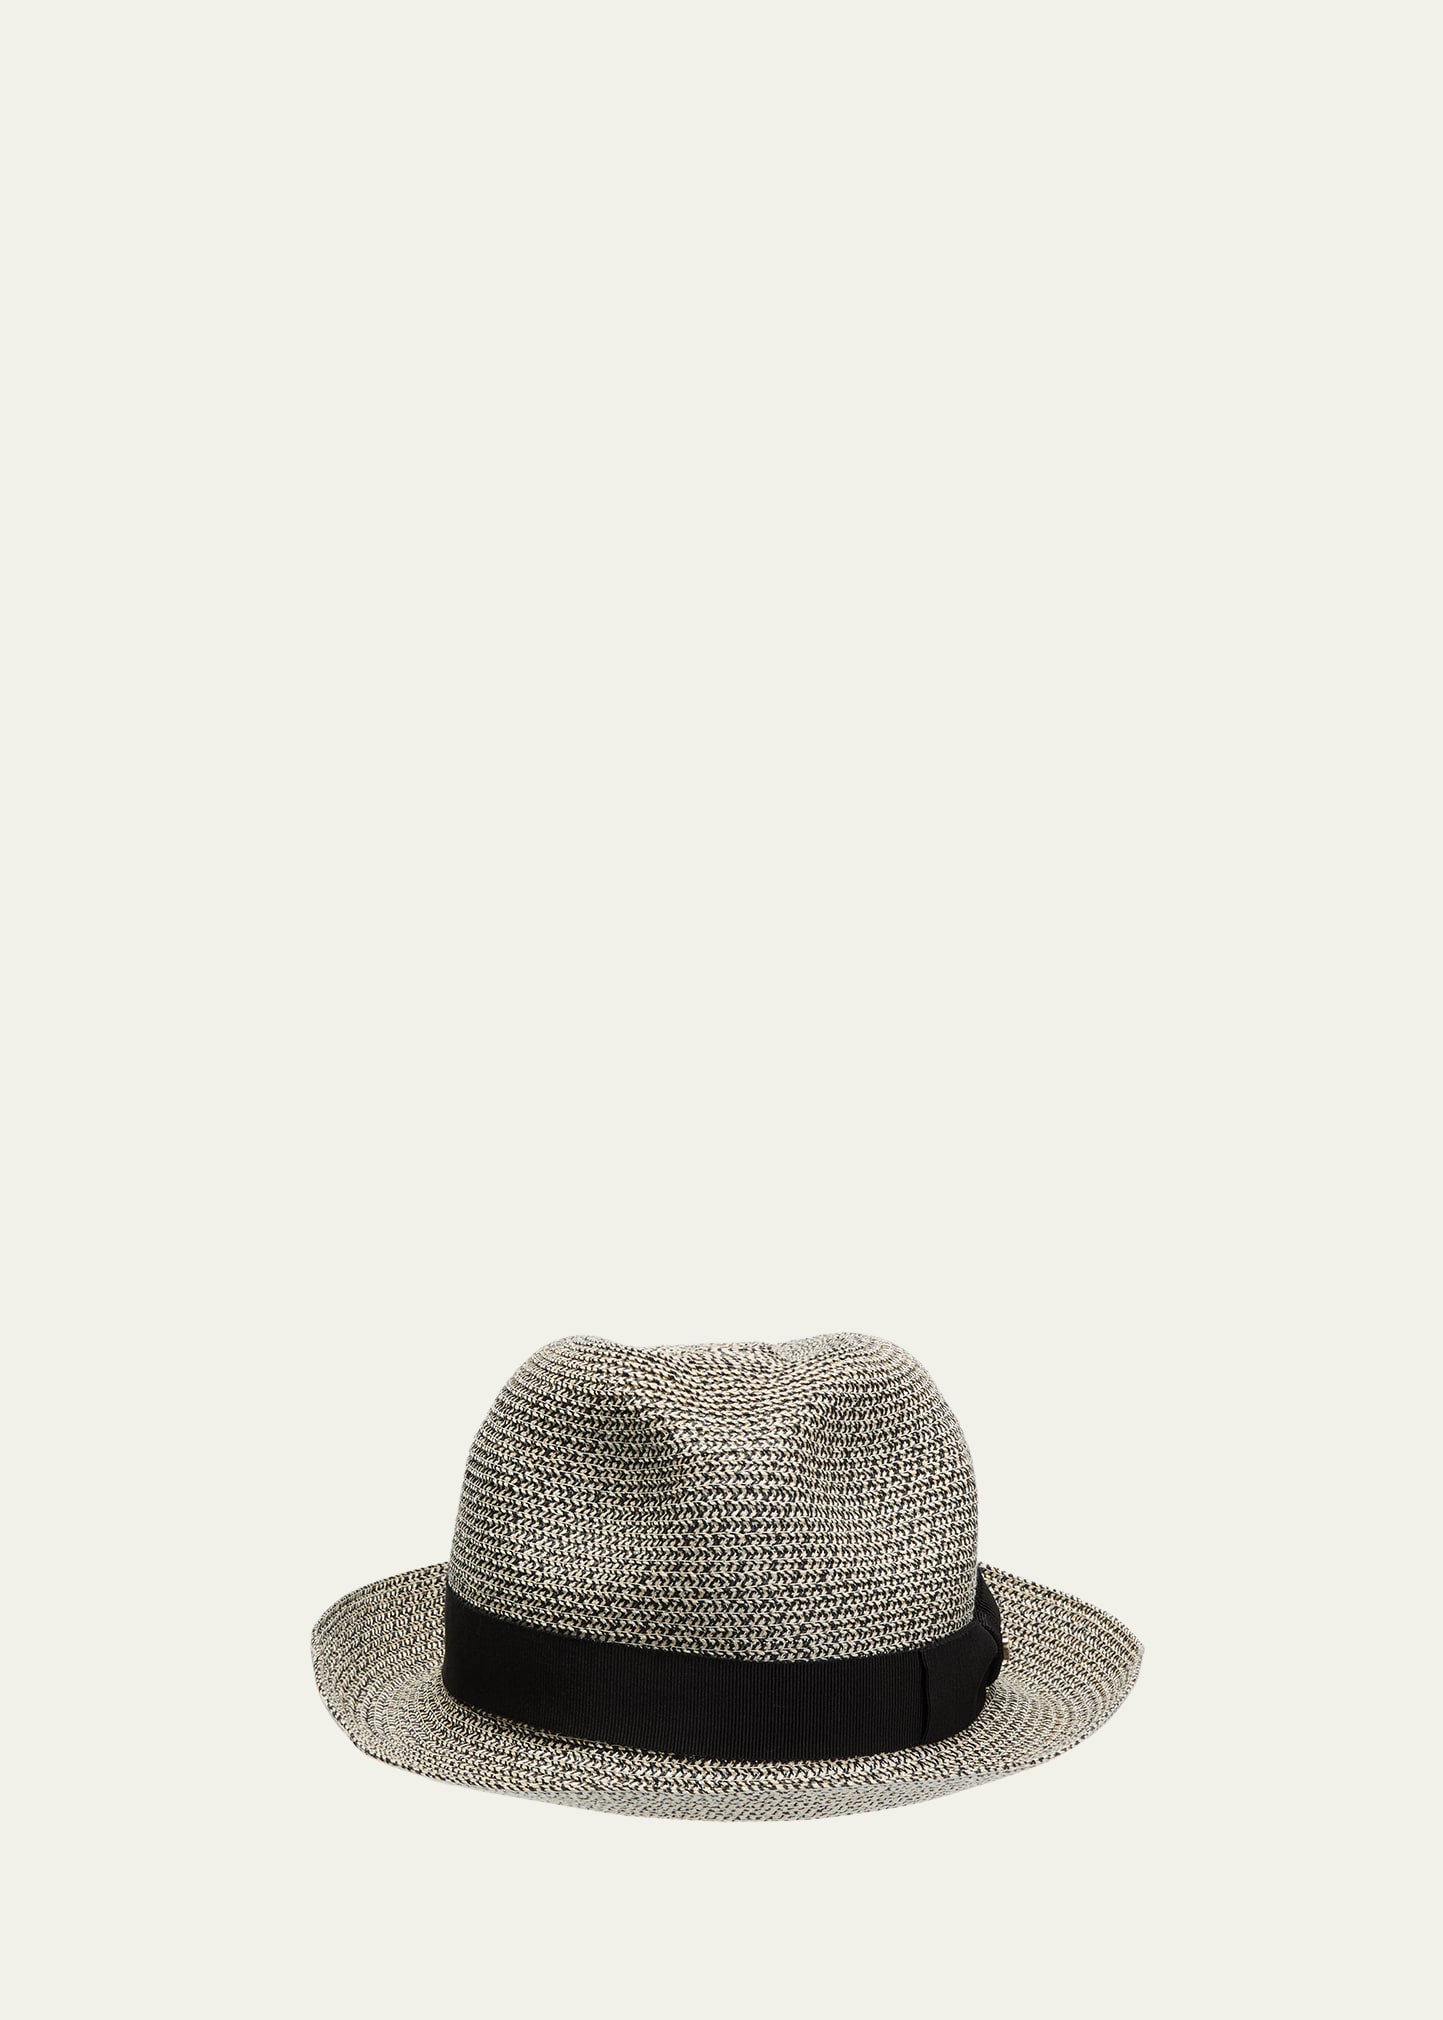 Inverni Men's Hemp Textile Fedora Hat In Naturalblack